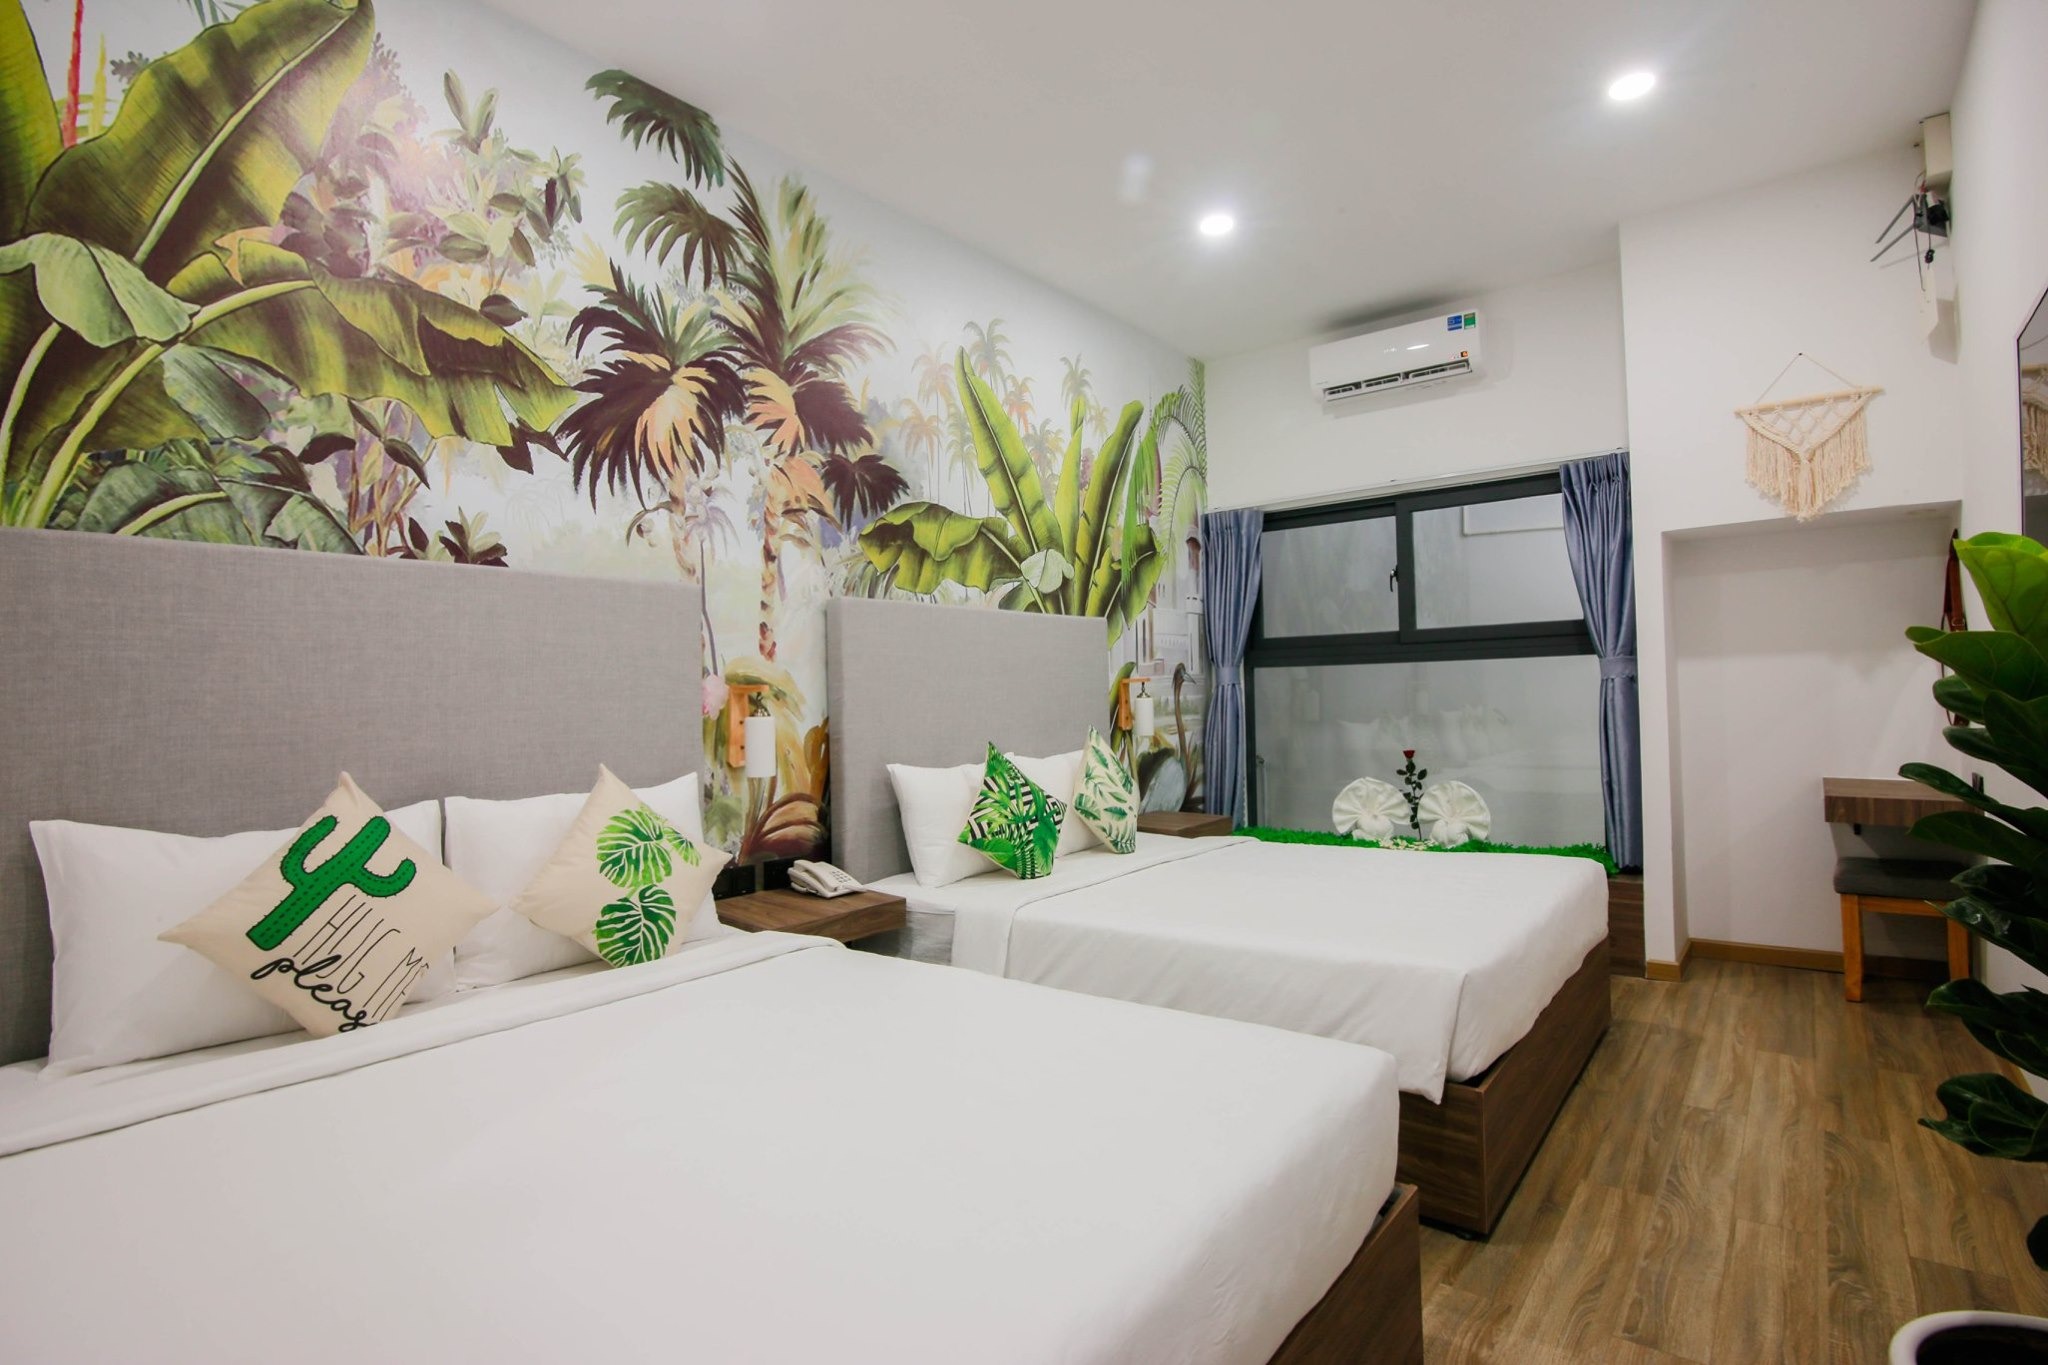 Chill hết nấc với Top 7 khách sạn ở Phú Yên view đẹp, giá rẻ